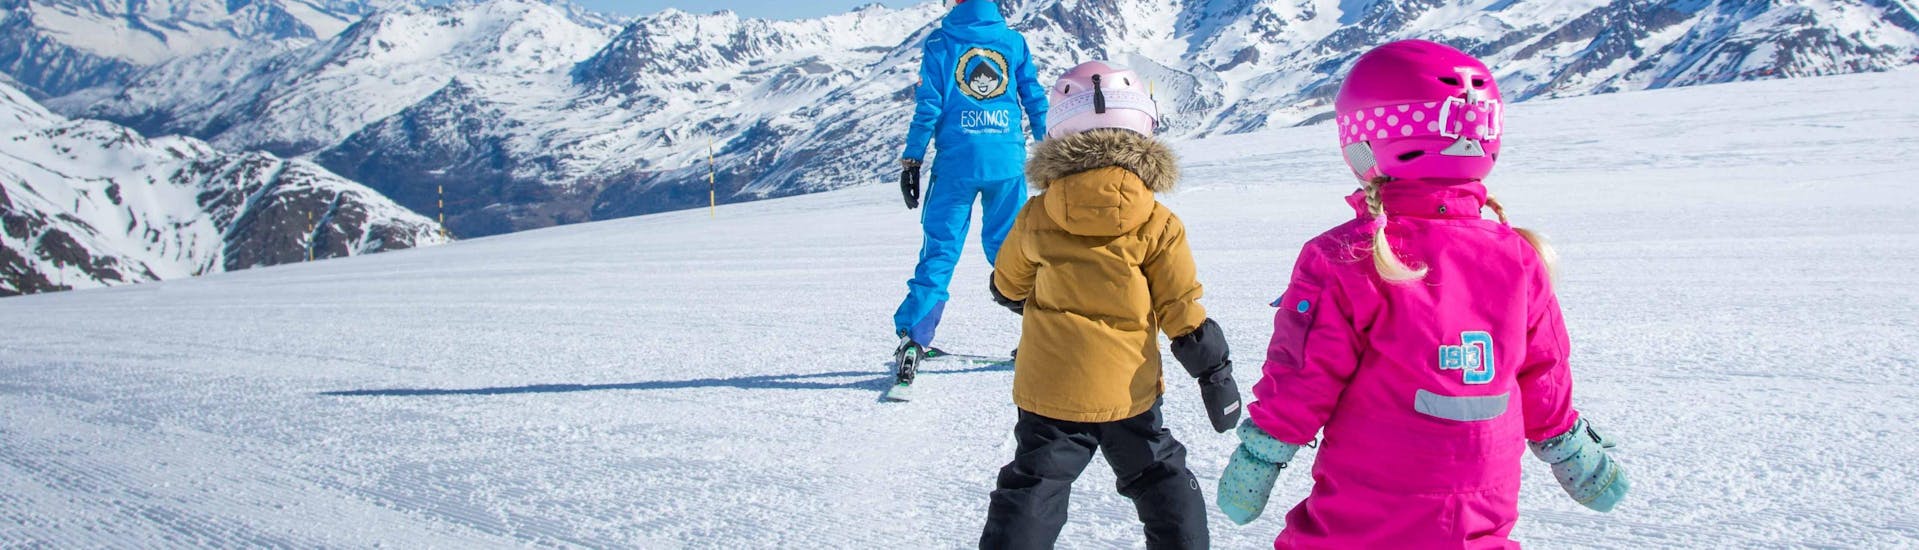 Clases de esquí privadas para niños a partir de 8 años para todos los niveles.